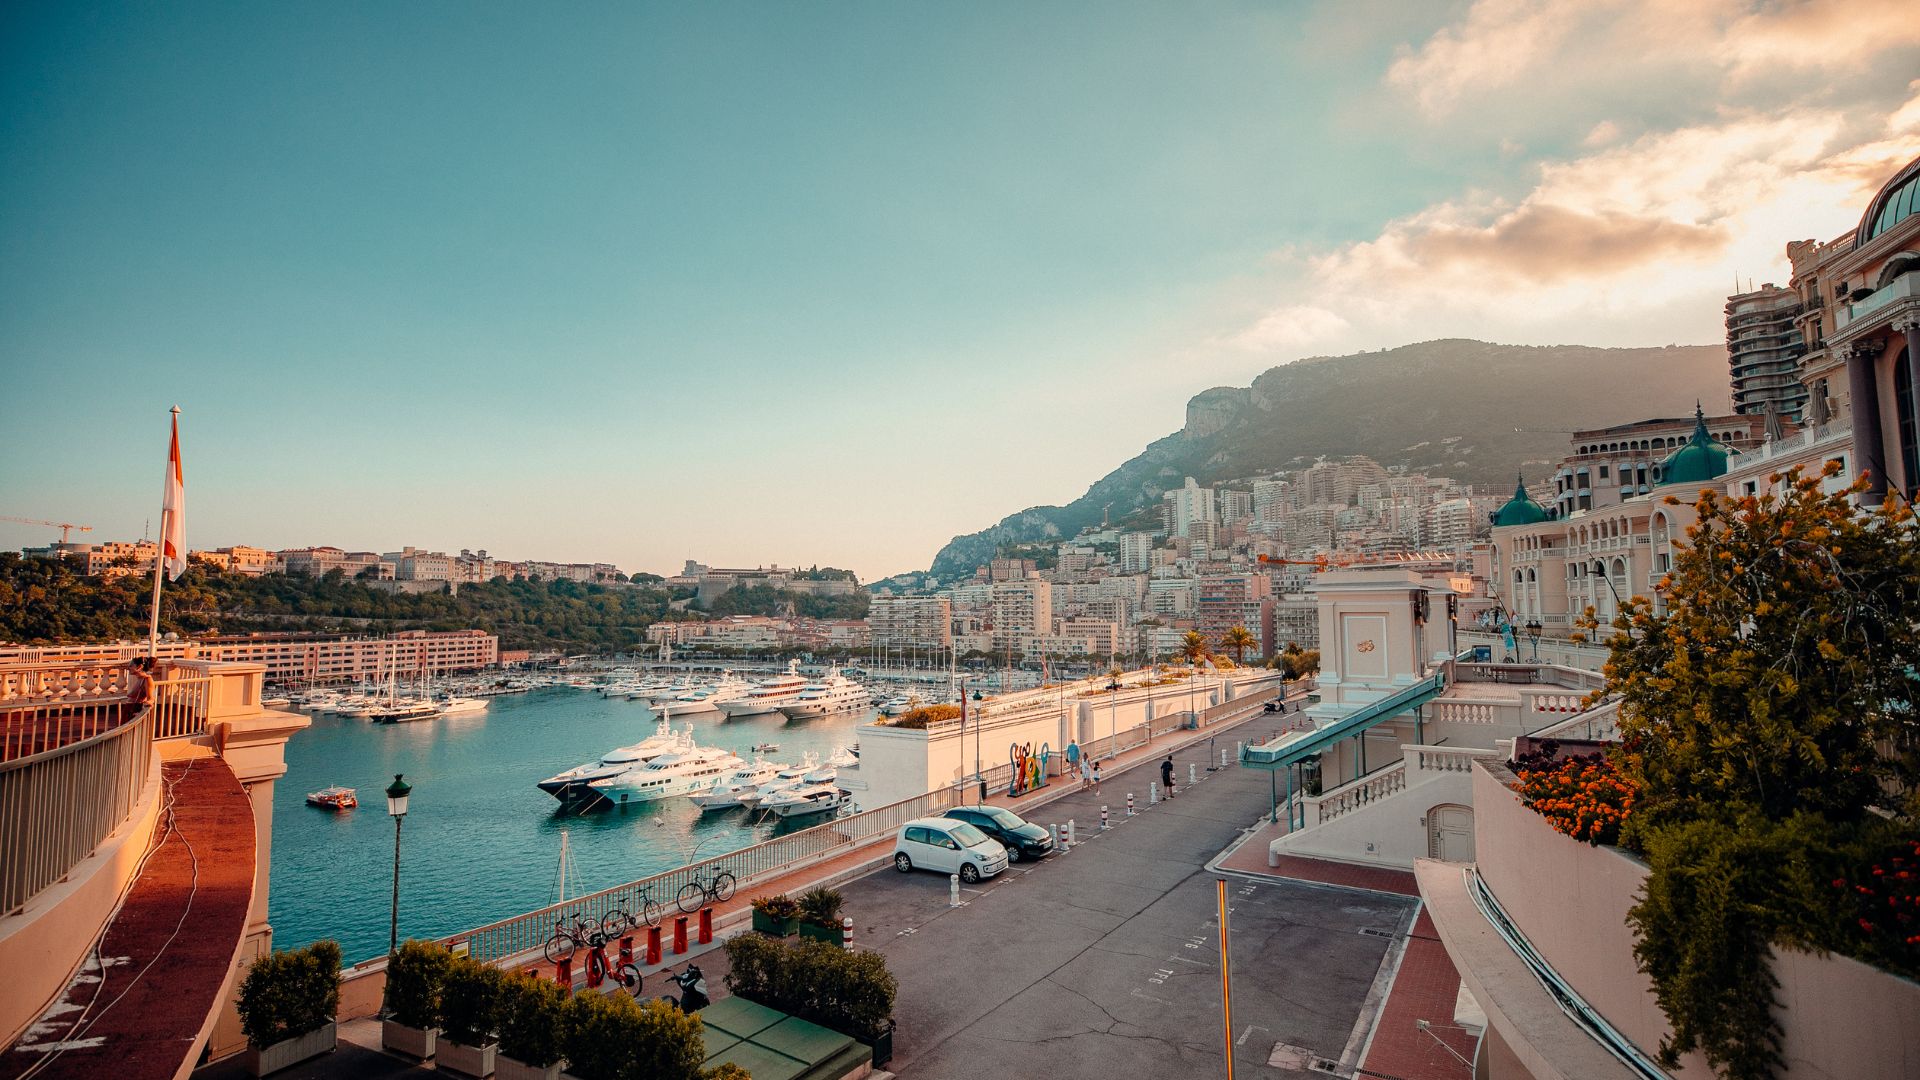 Harbor in Monaco